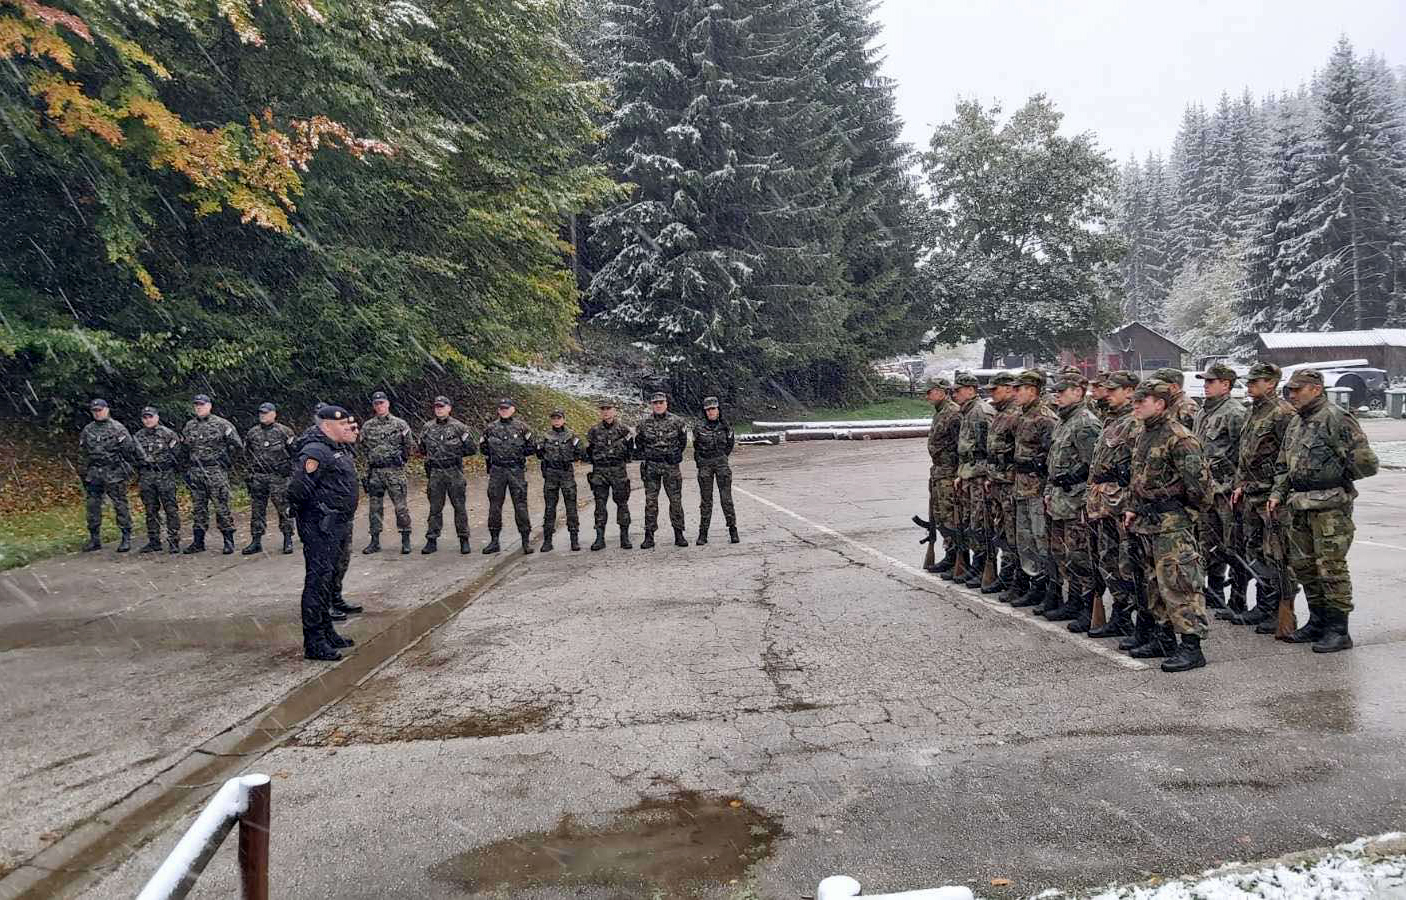 Komandant Žandarmerije Luković obišao polaznike selekcione obuke za prijem u ovu elitnu jedinicu